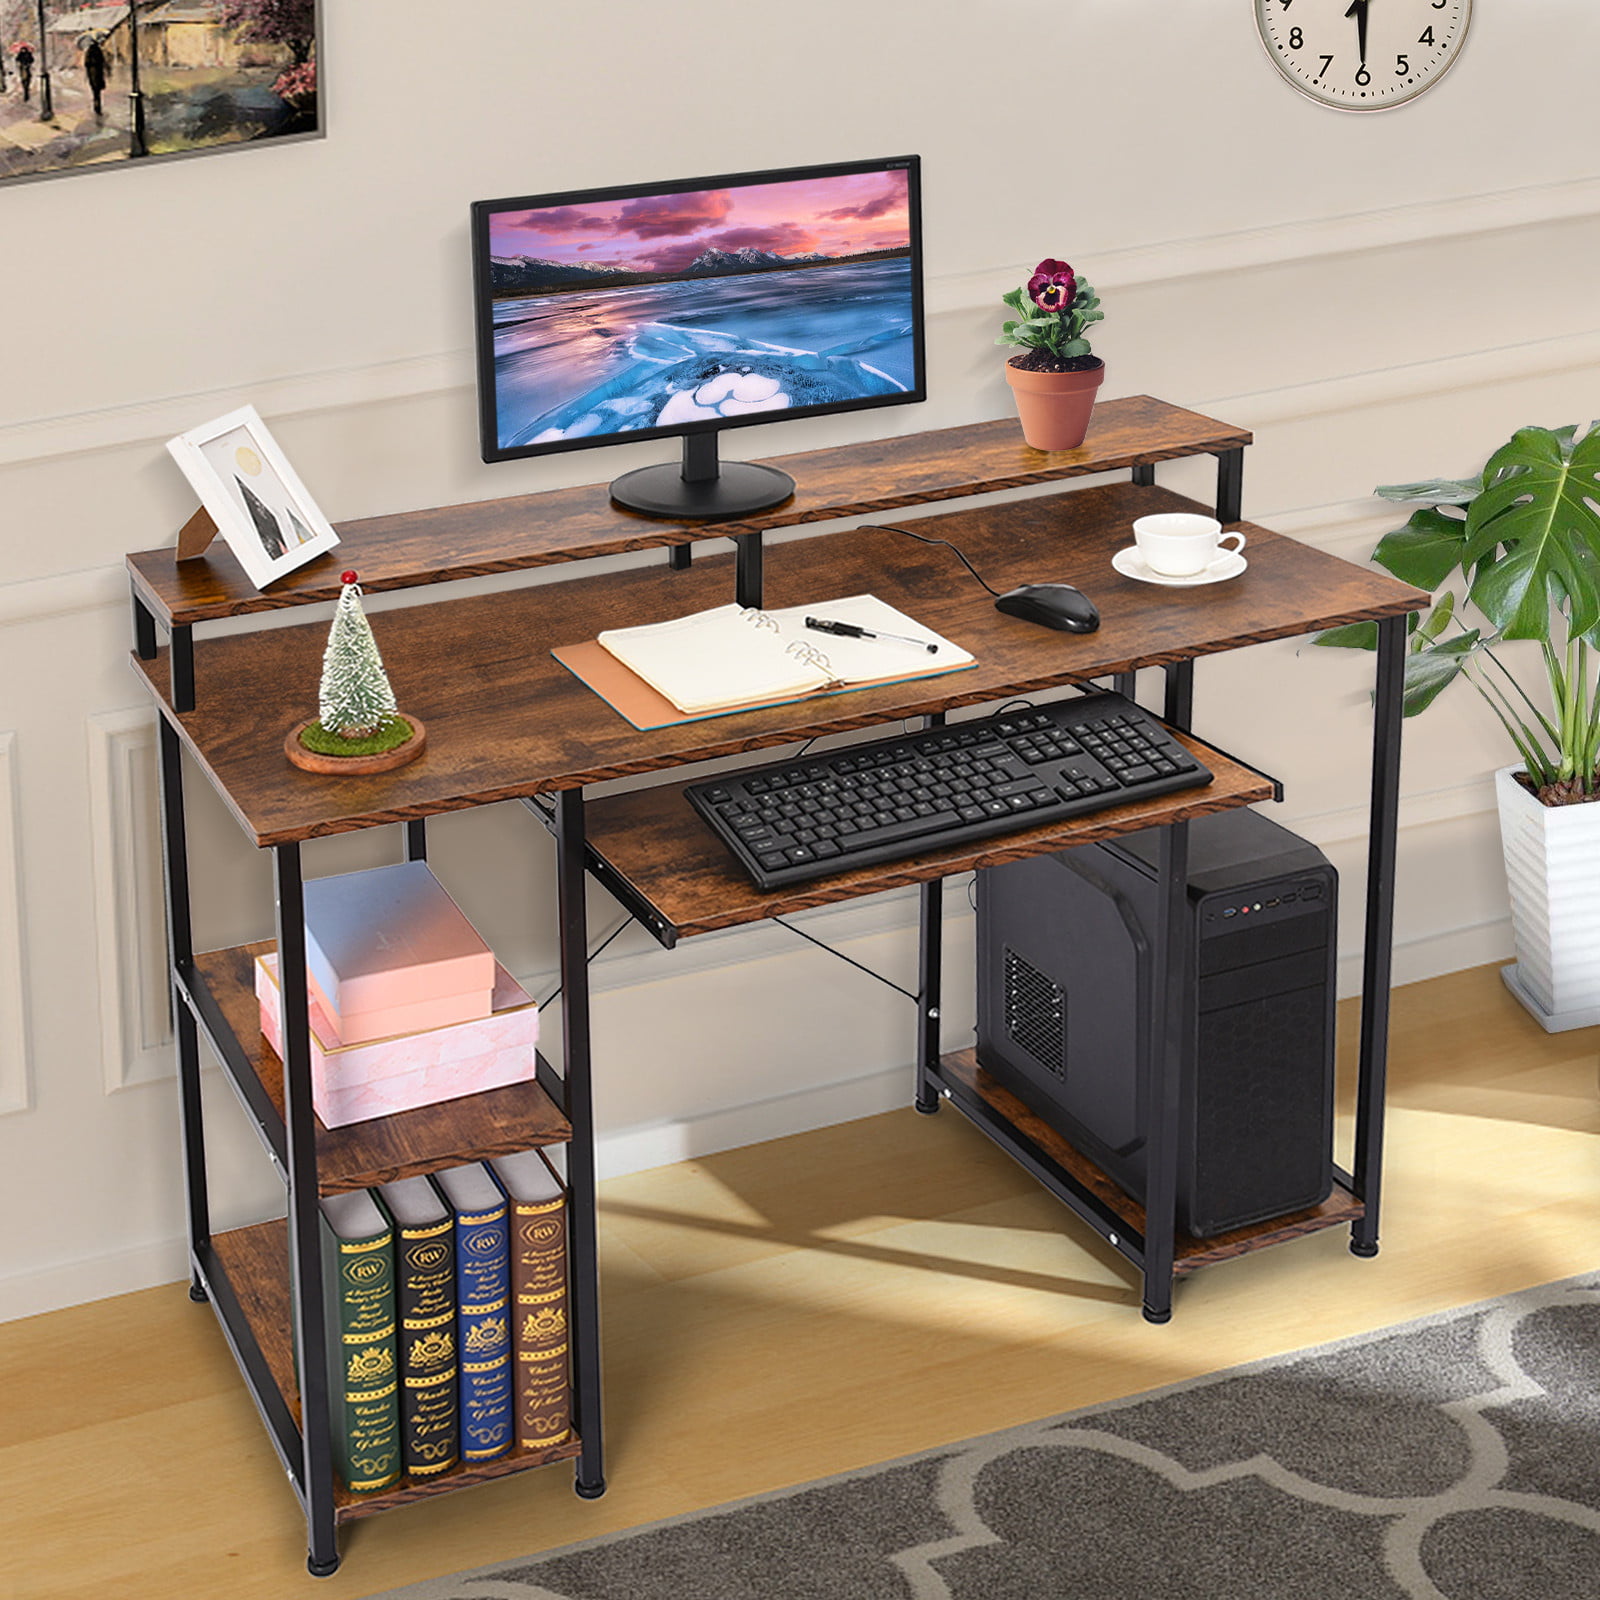 Details about   Computer Table Workstation Metal Black Desk Home Office Study Work Station Shelf